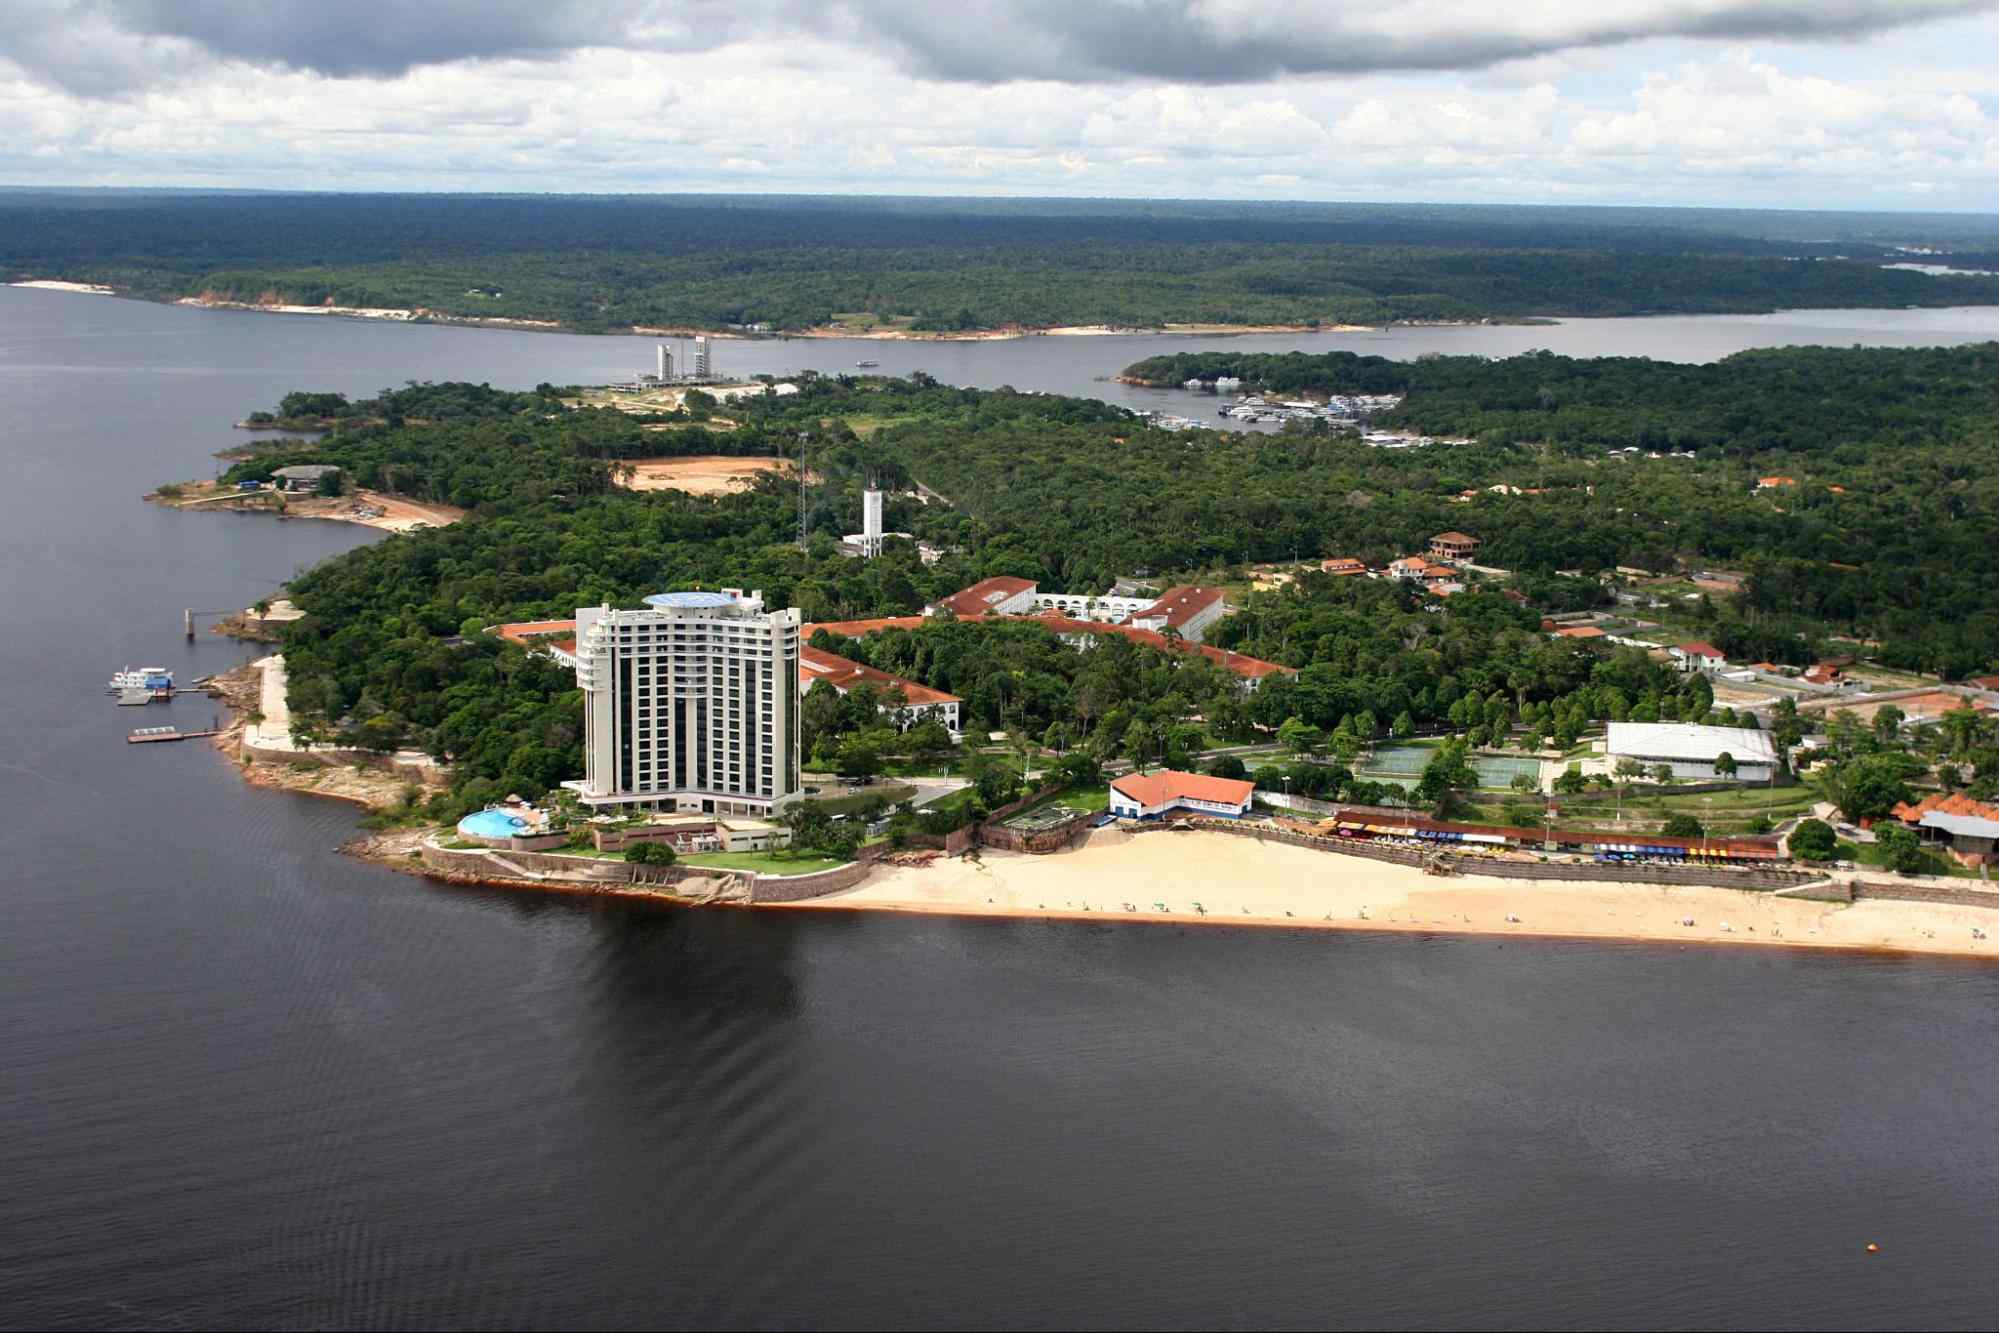 Vista aérea de uma parte de Manaus. Os trechos de terra se intercalam com as águas escuras do rio e são densamente arborizados, com algumas construções baixas e apenas um prédio moderno e grande.